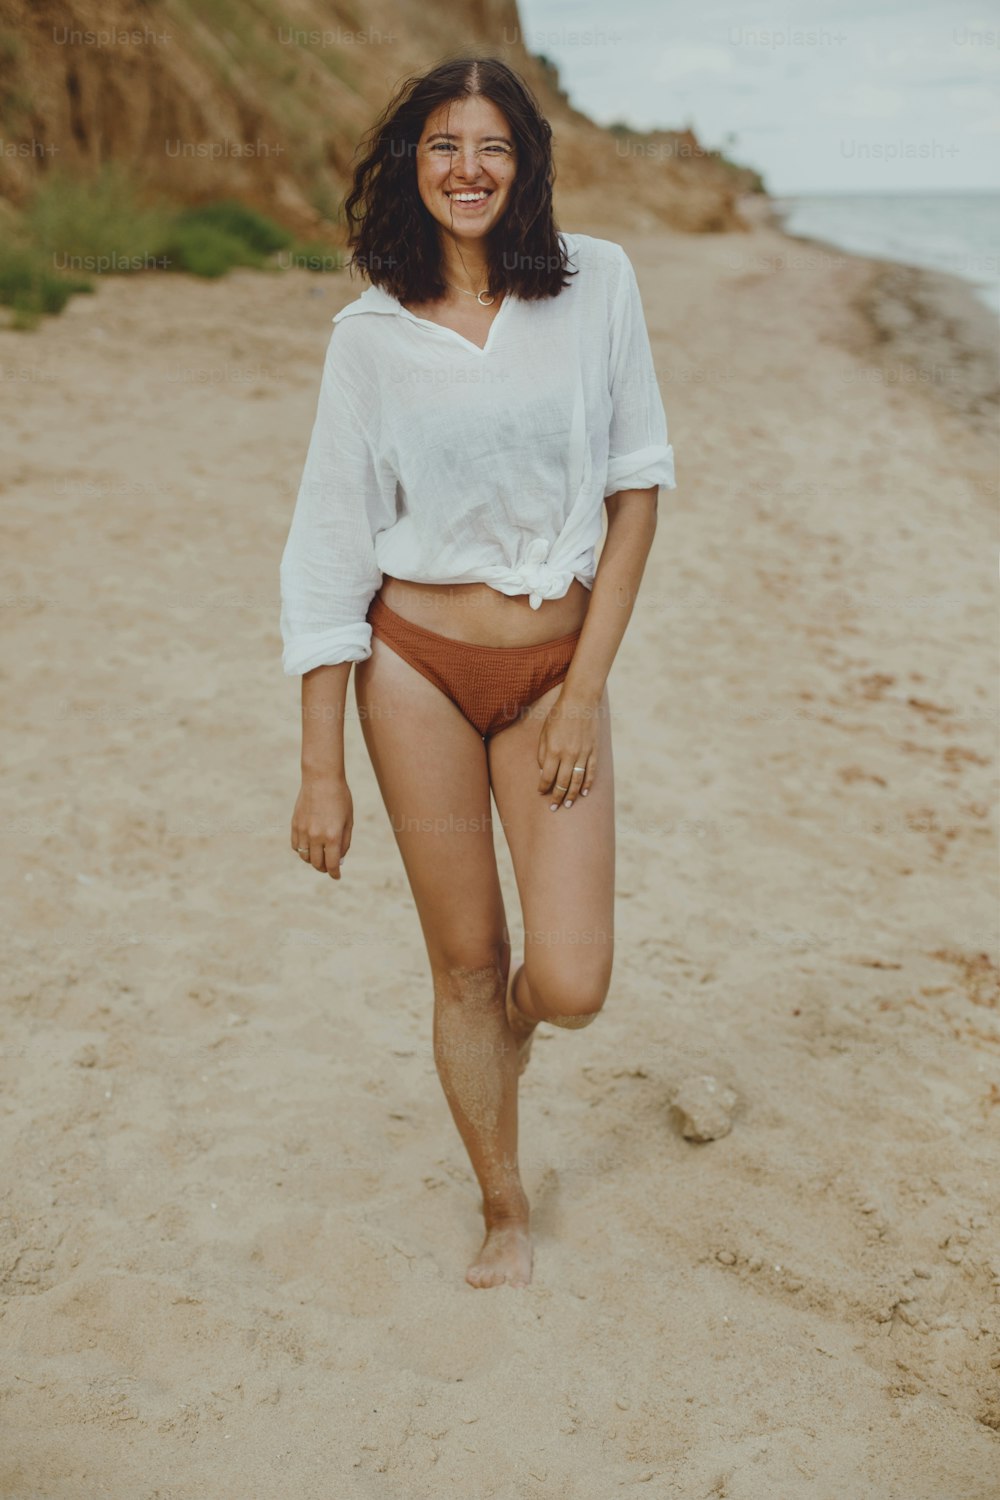 Fille bohème heureuse en chemise blanche marchant sur une plage ensoleillée. Femme élégante insouciante en maillot de bain et chemise relaxante au bord de la mer. Vacances. Image authentique de style de vie